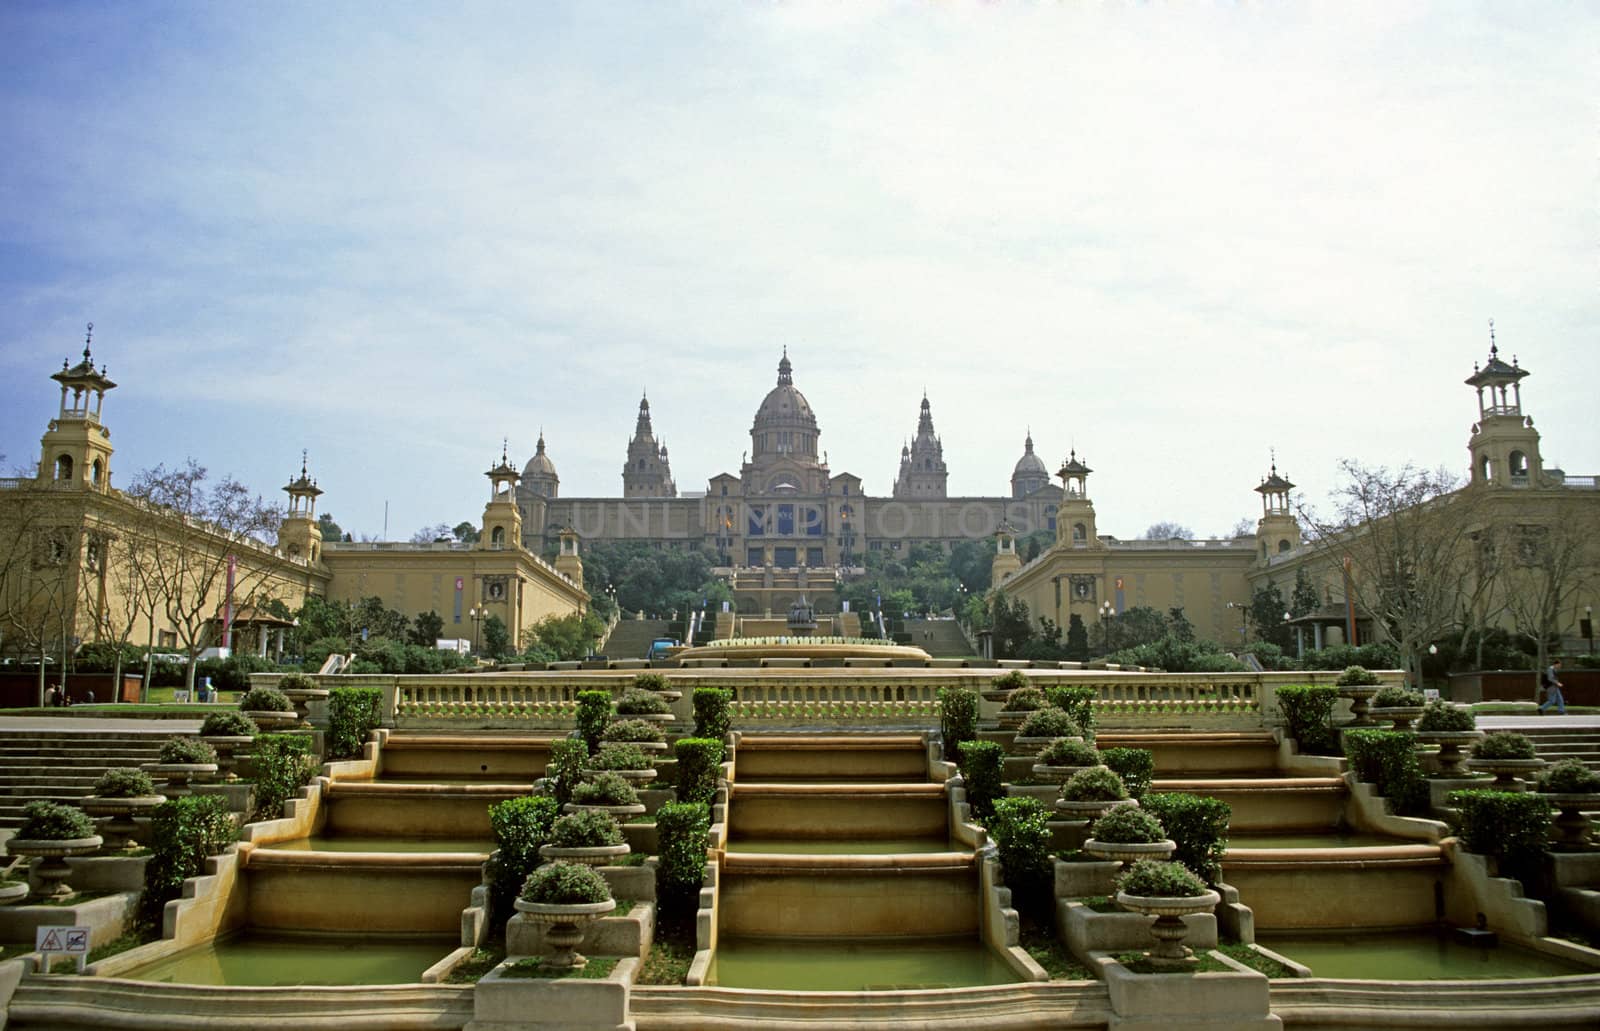 Royal Palace, Barcelona, Spain by ACMPhoto